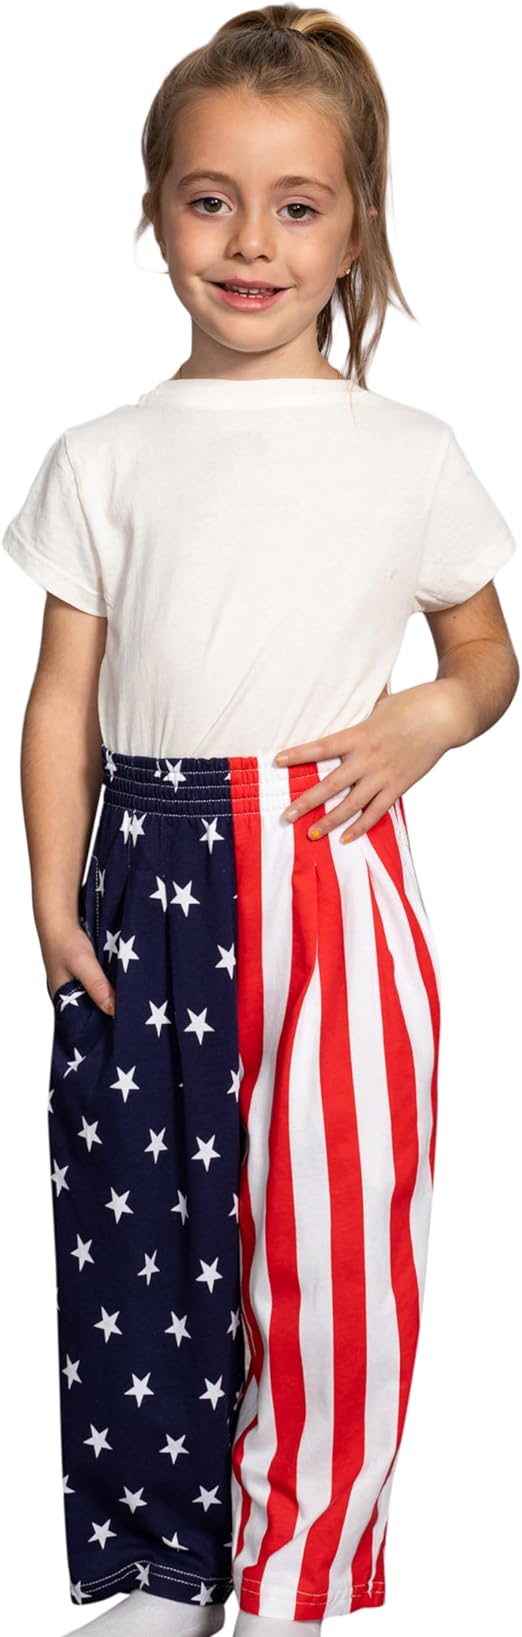 USA Flag Kids Pants Patriotic Stars